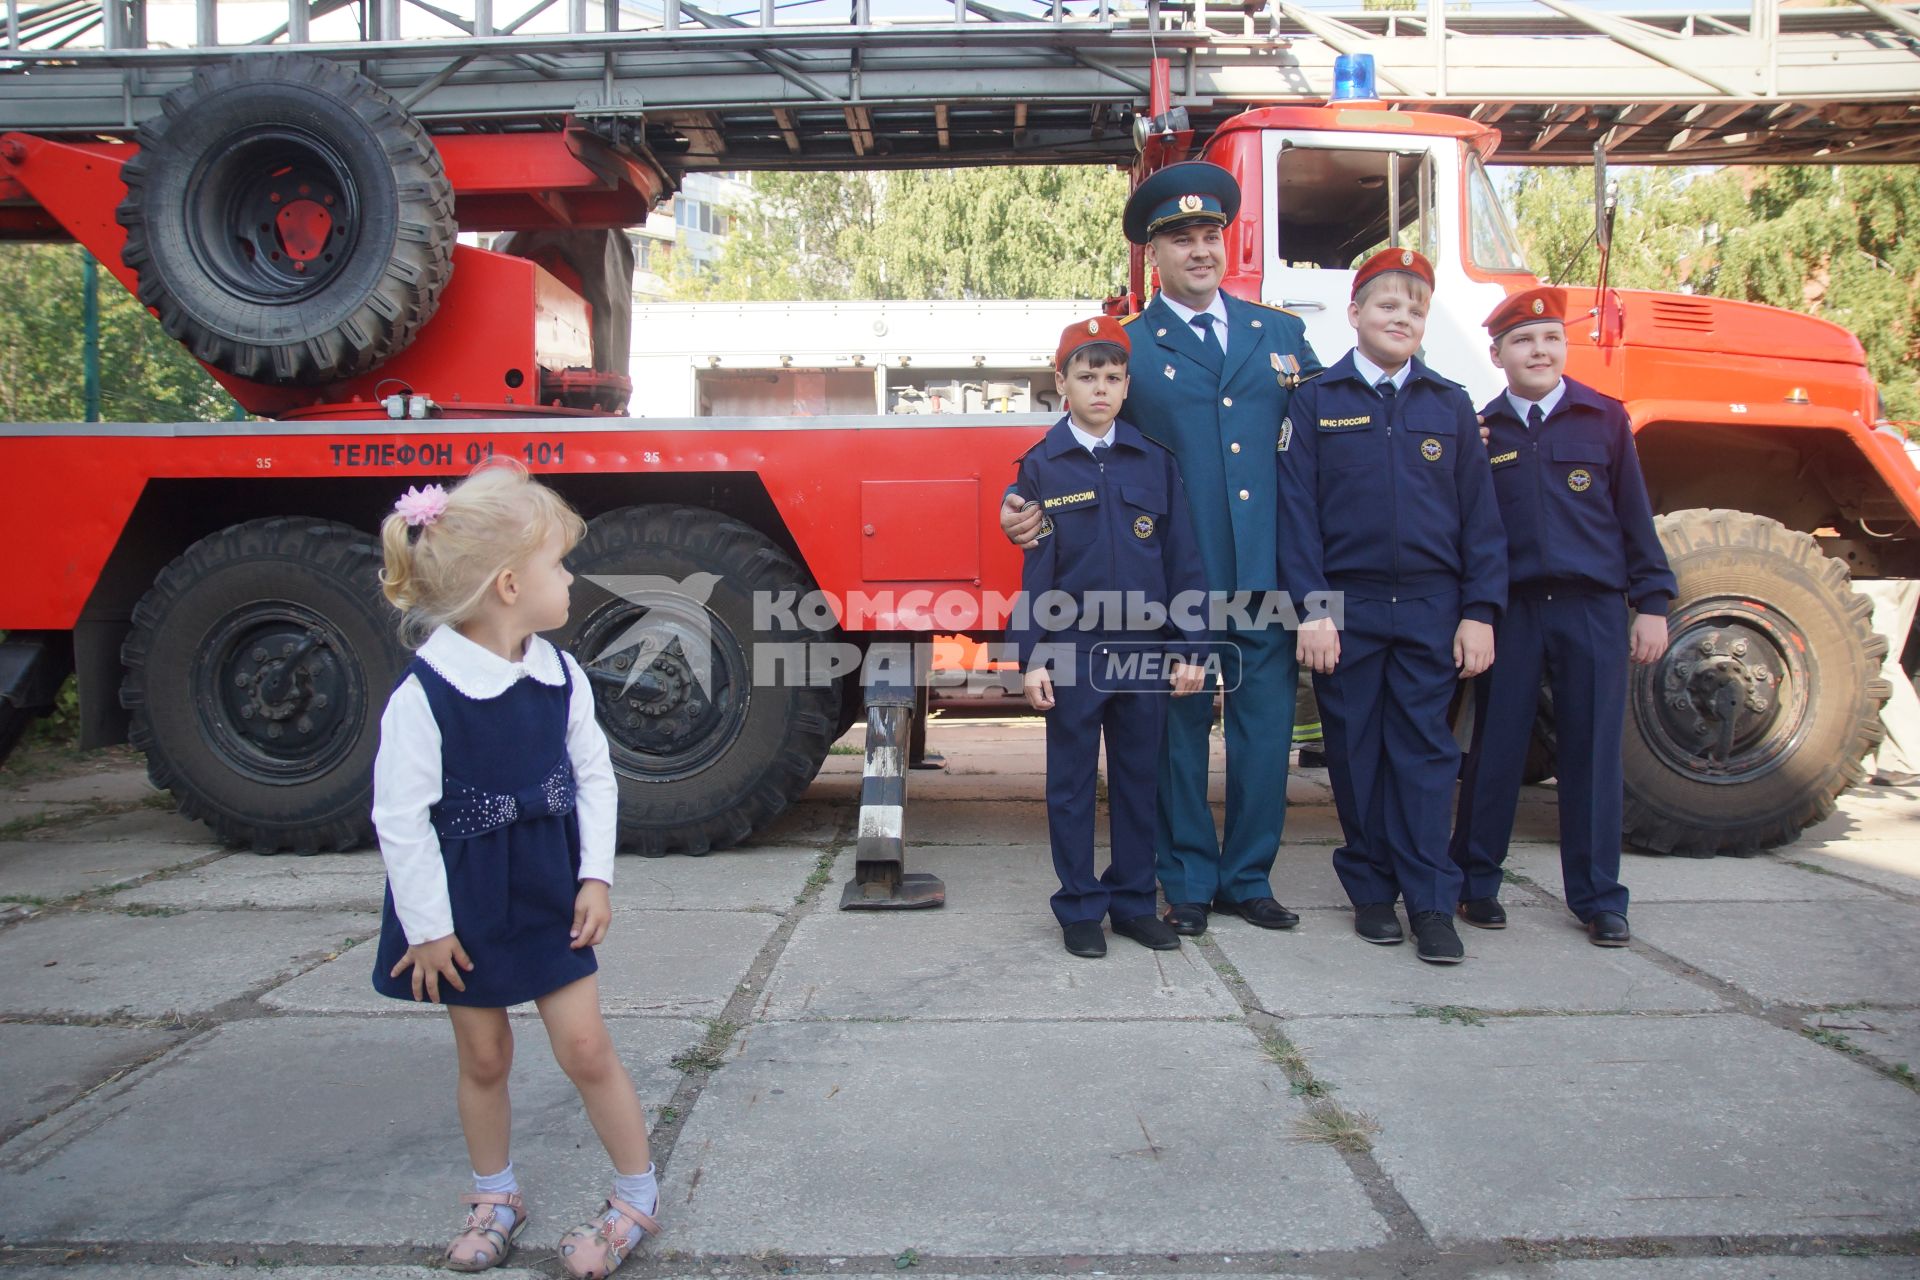 Тольятти. Ученики фотографируются  после торжественной линейки, посвященной дню знаний в кадетском классе  МЧС одной из школ города.